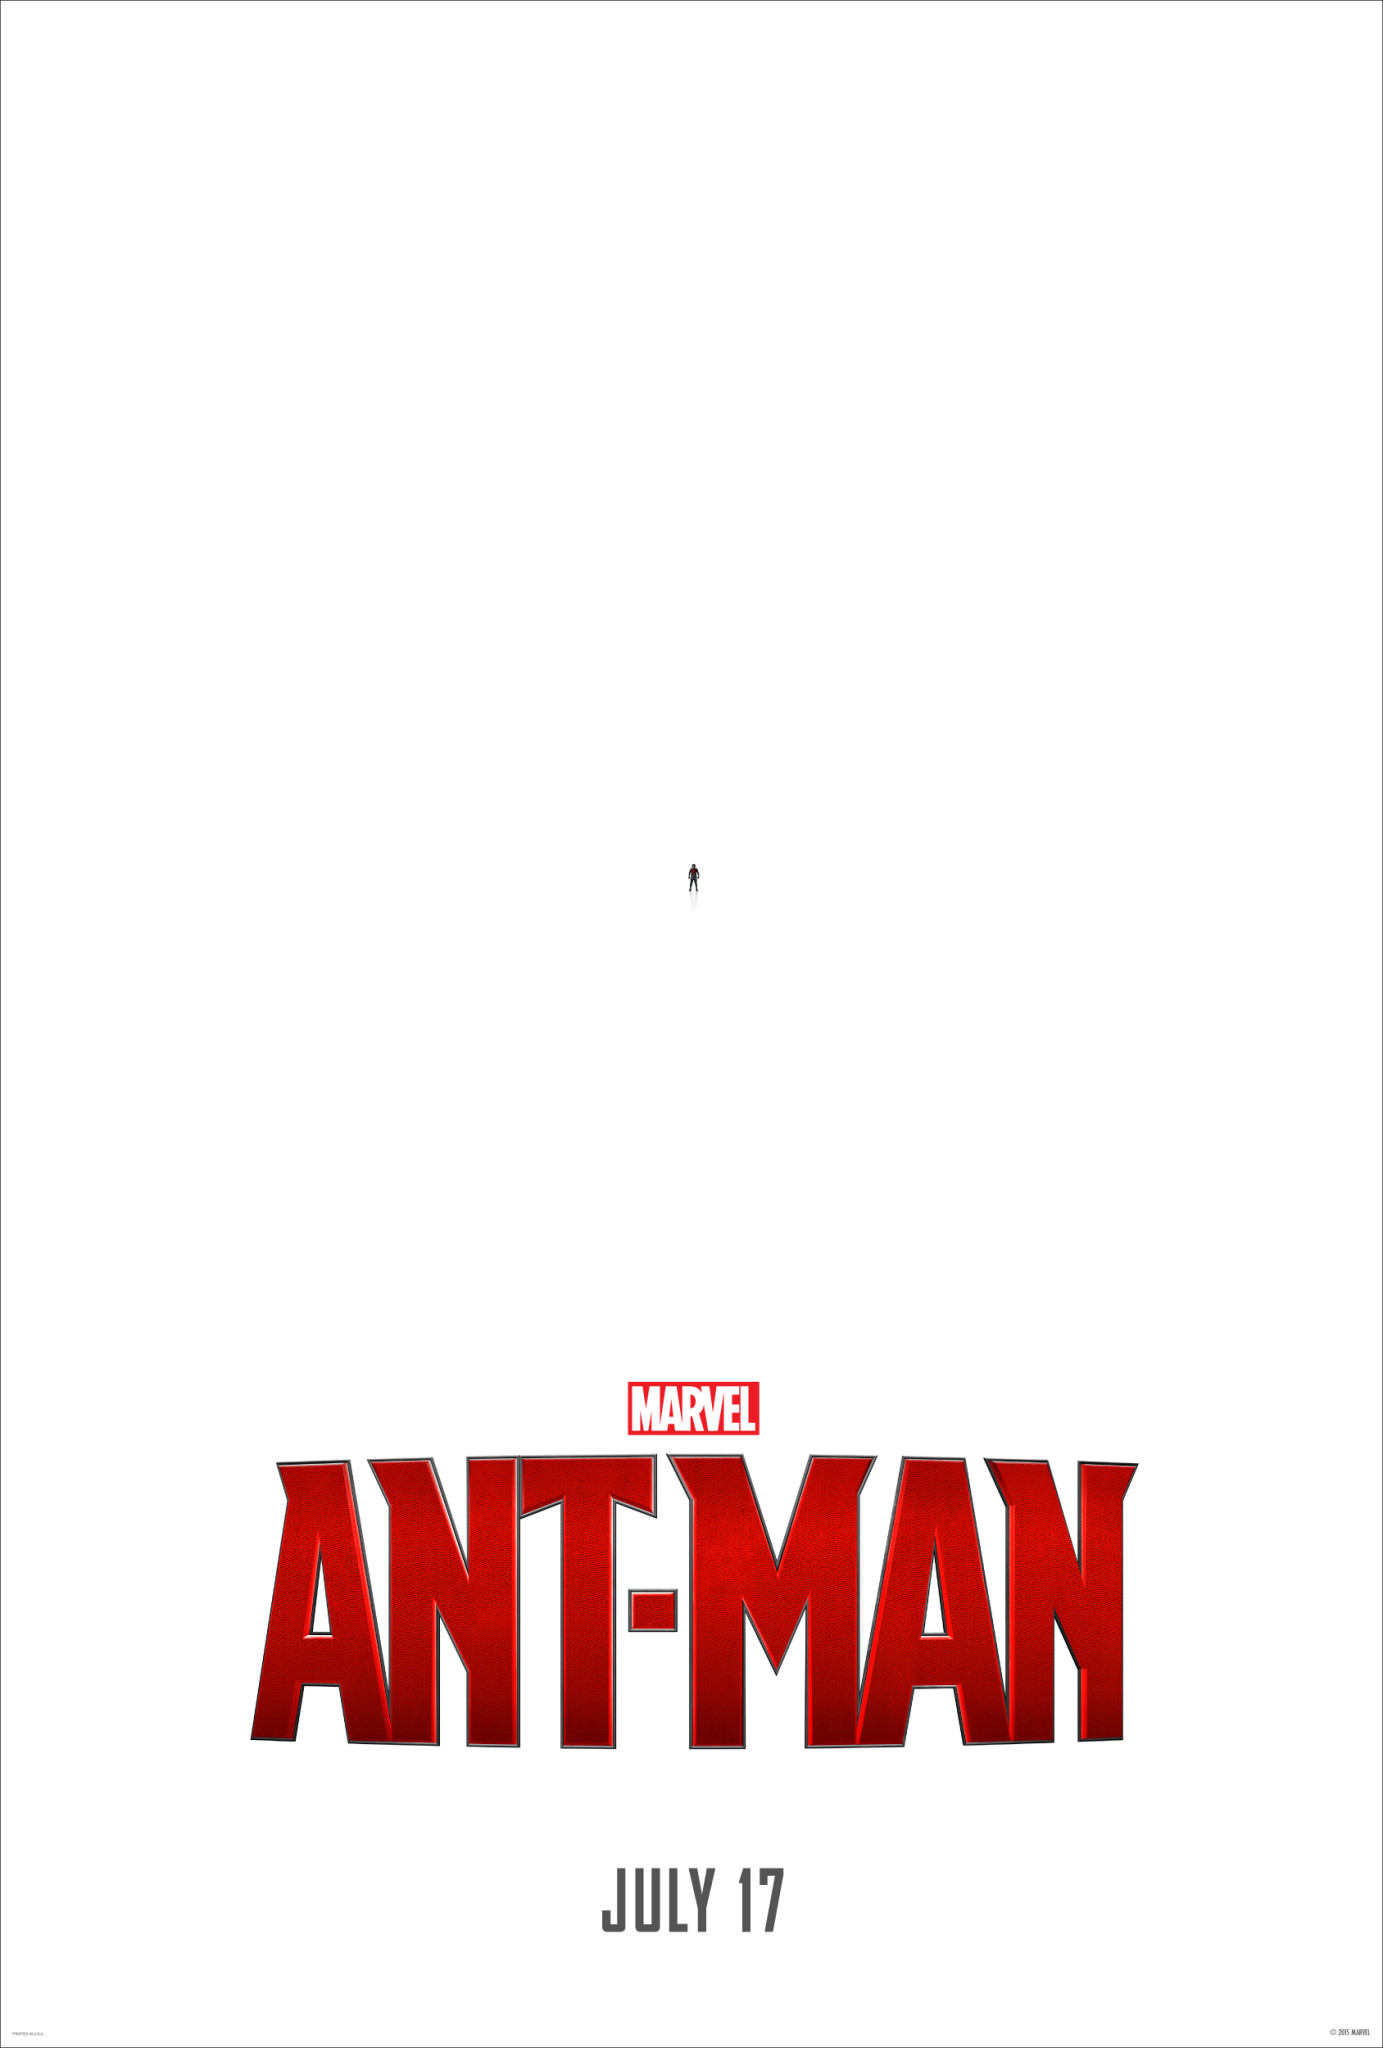 Marvel’s Ant Man Trailer